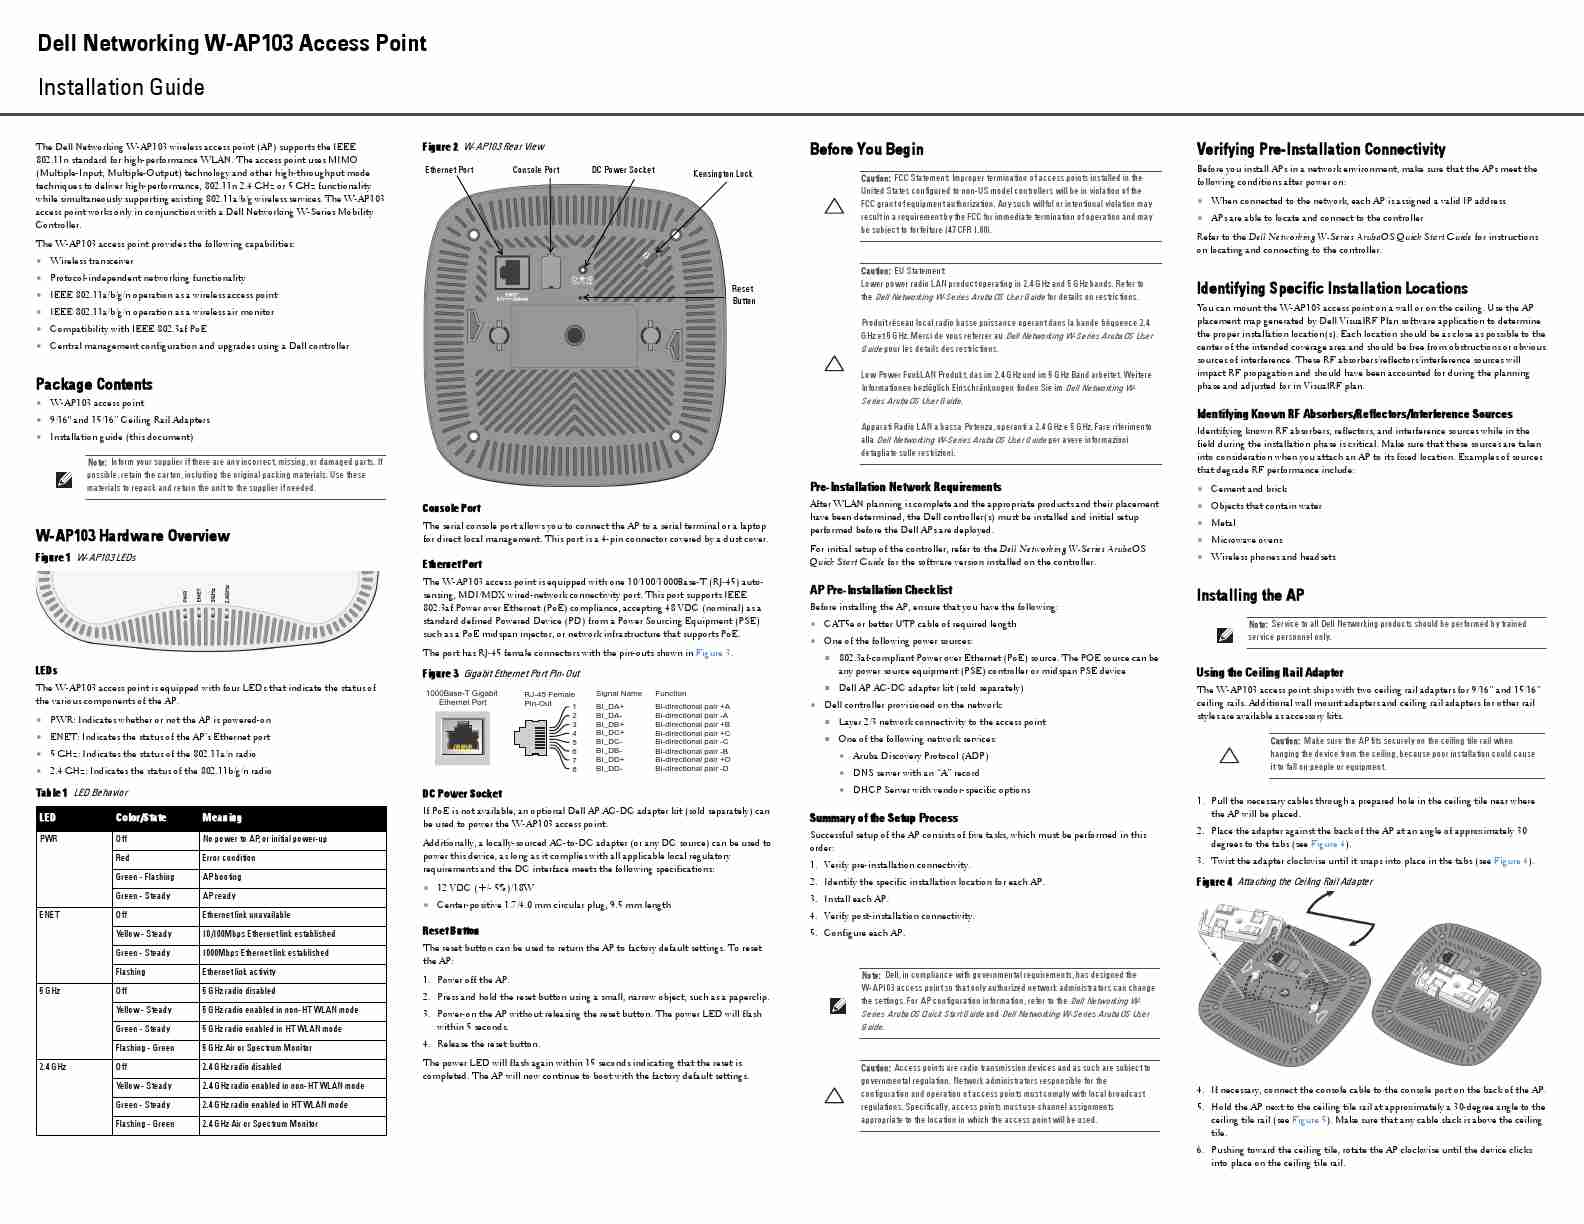 DELL W-AP103-page_pdf